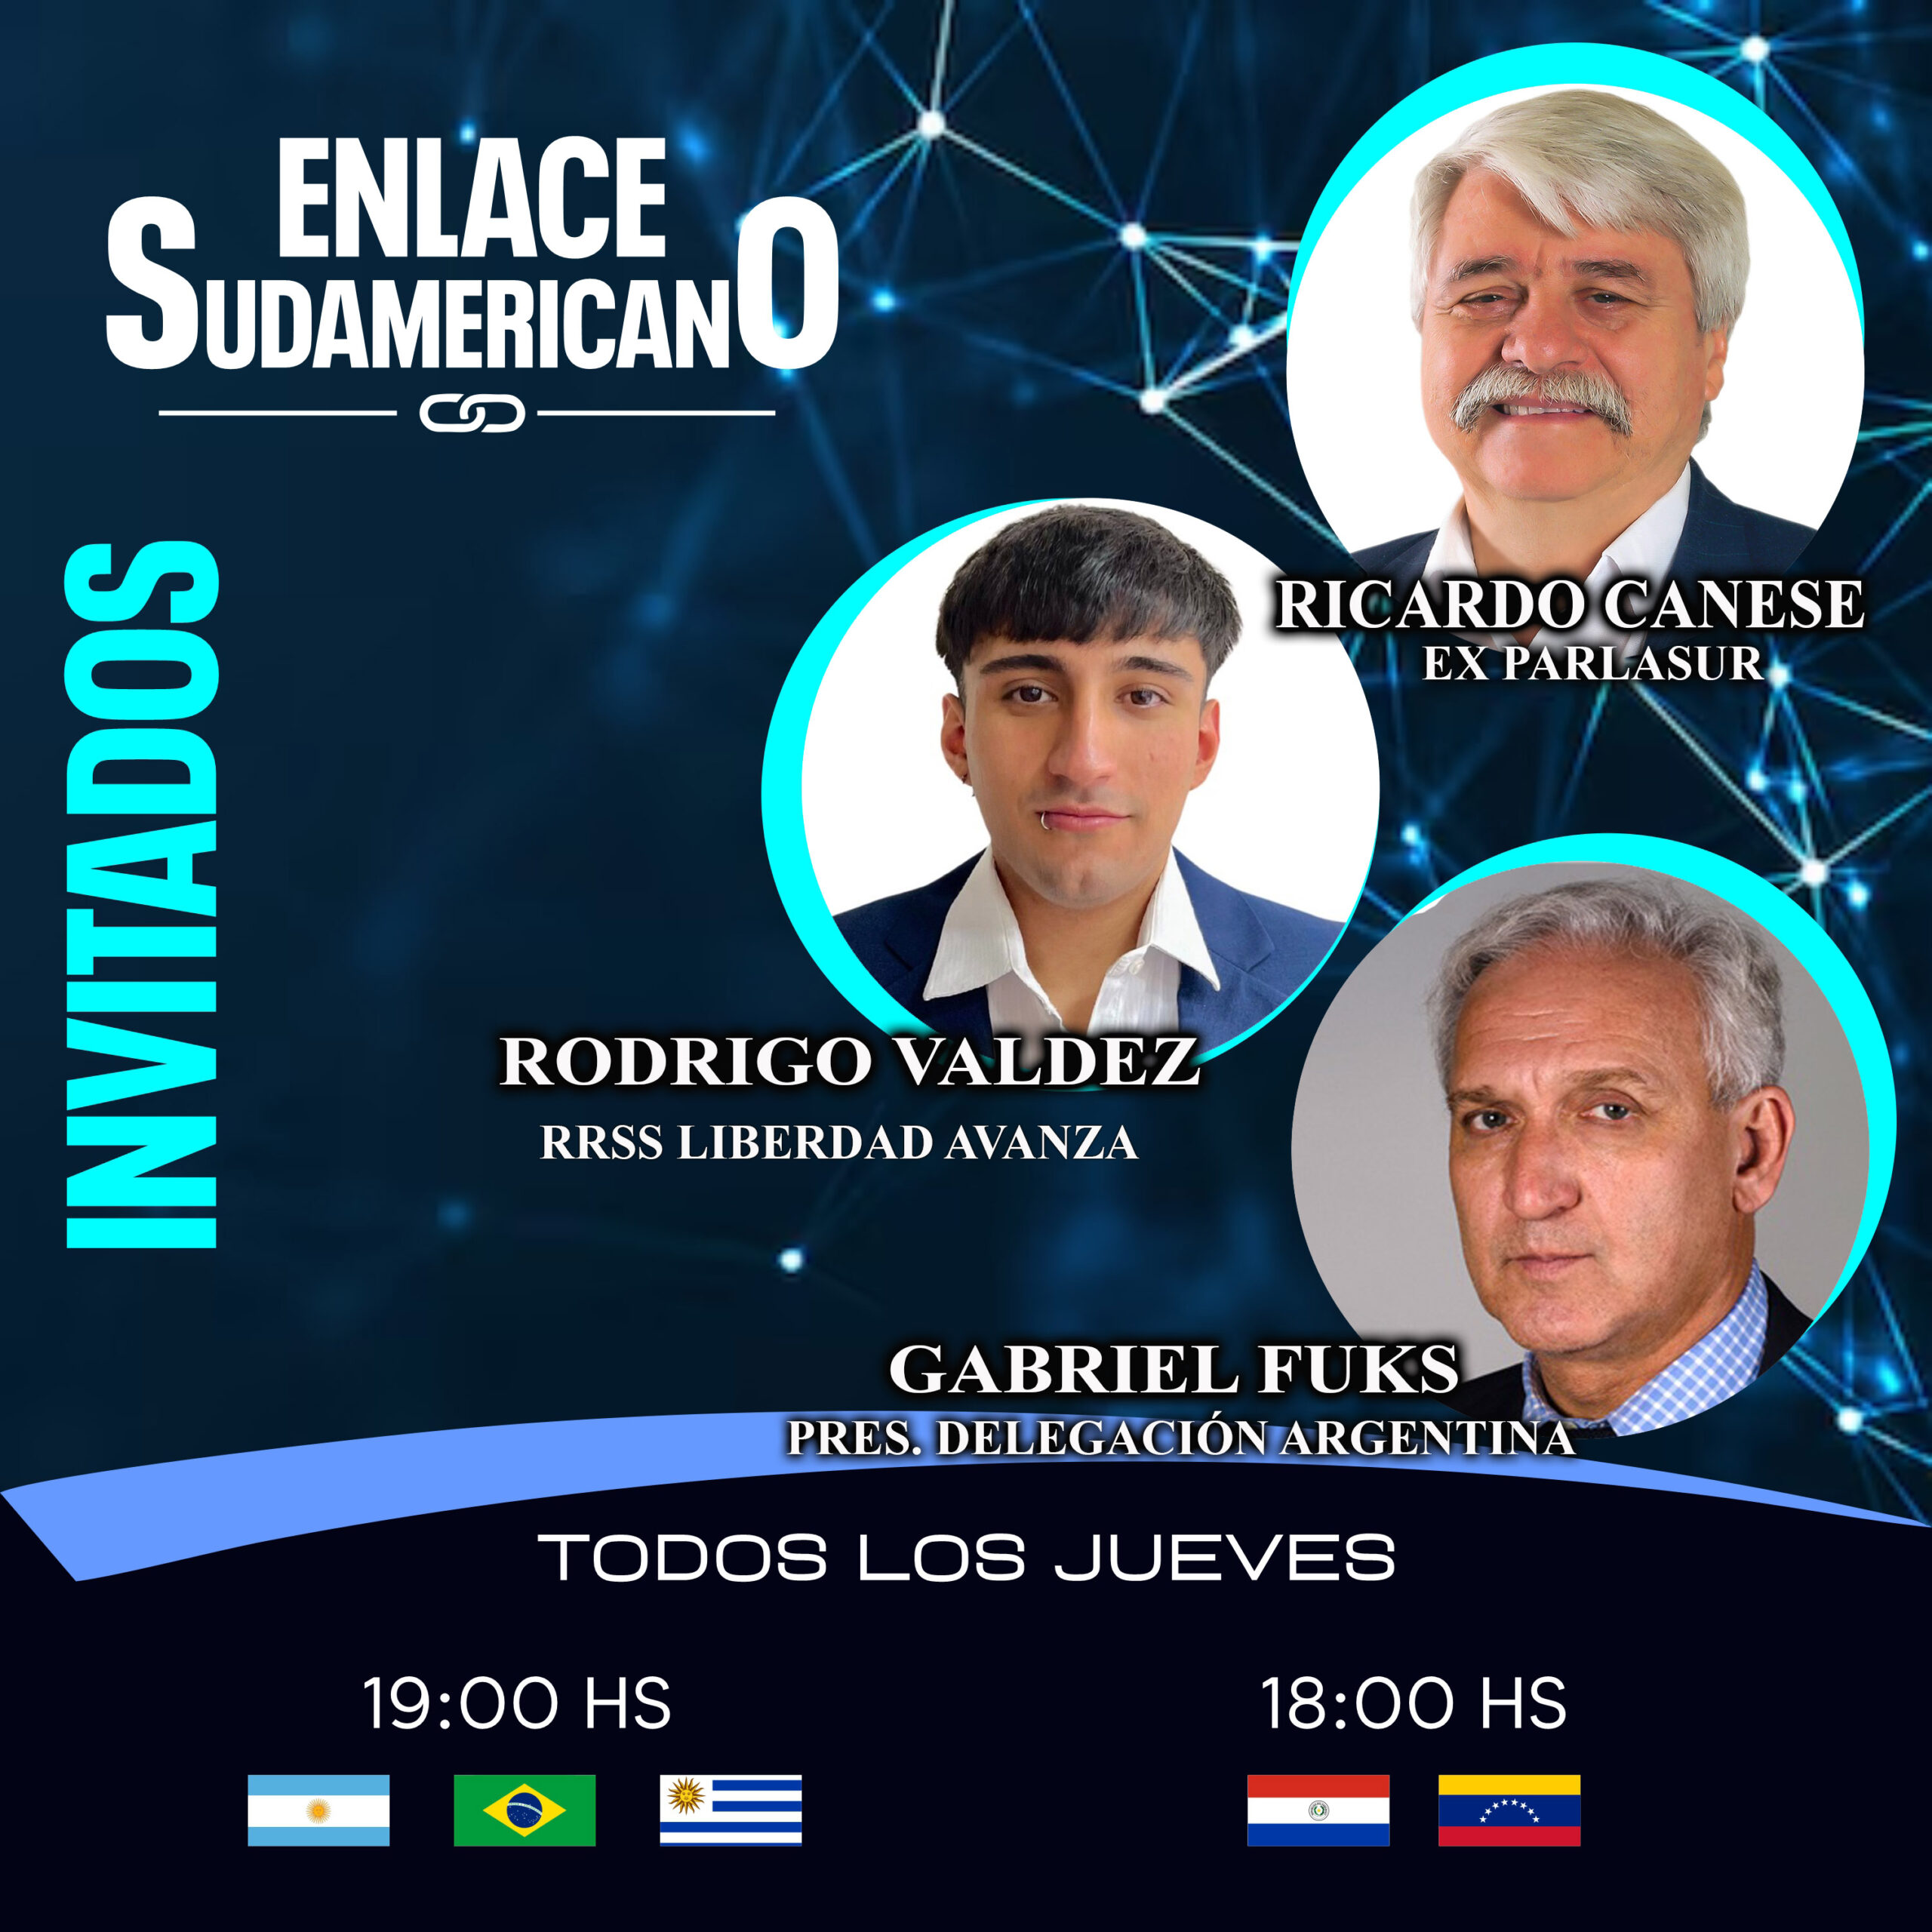 En el Enlace Sudamericano estará: Gabriel Fuks, Rodrigo Valdez y Ricardo Canese